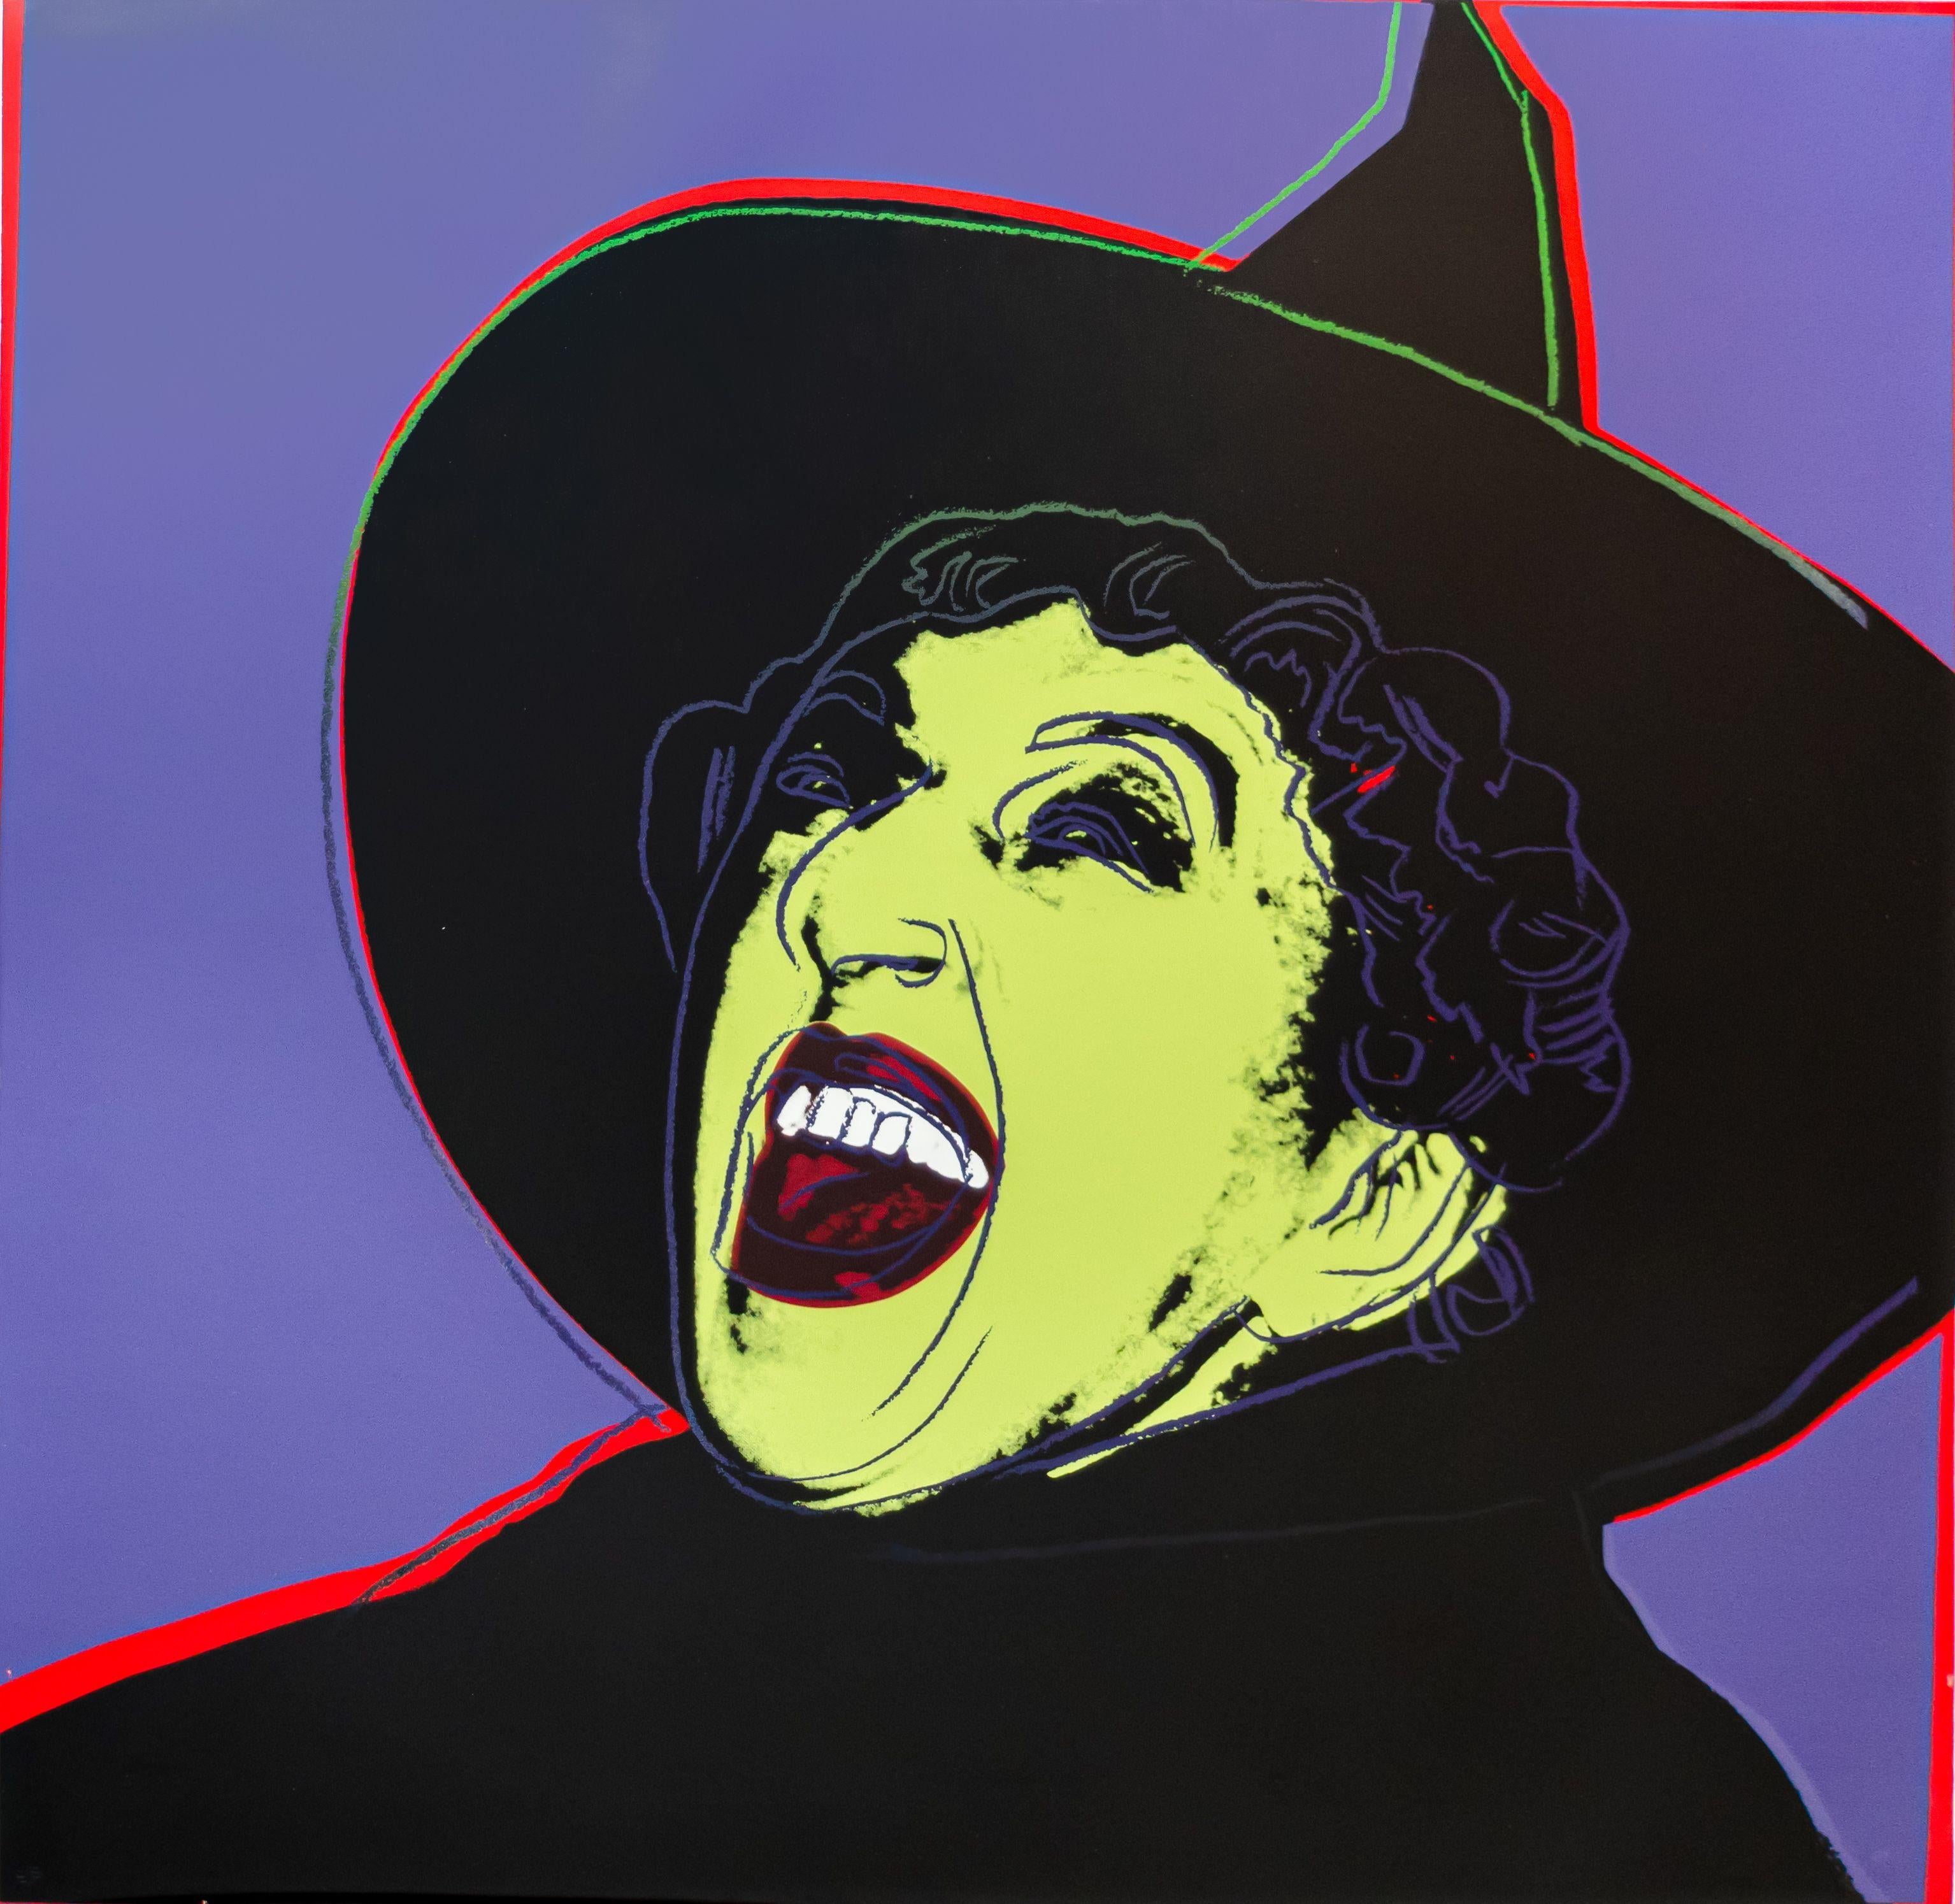 ANDY WARHOL (1928-1987)

Dieser Warhol-Druck "Witch" aus der Serie "Any Warhol's Myths" ist ein farbiger Siebdruck von 1981 auf Lenox Museum Board. Es handelt sich um einen nummerierten und mit Bleistift signierten Farbdruck Ed. 26/200 aus der